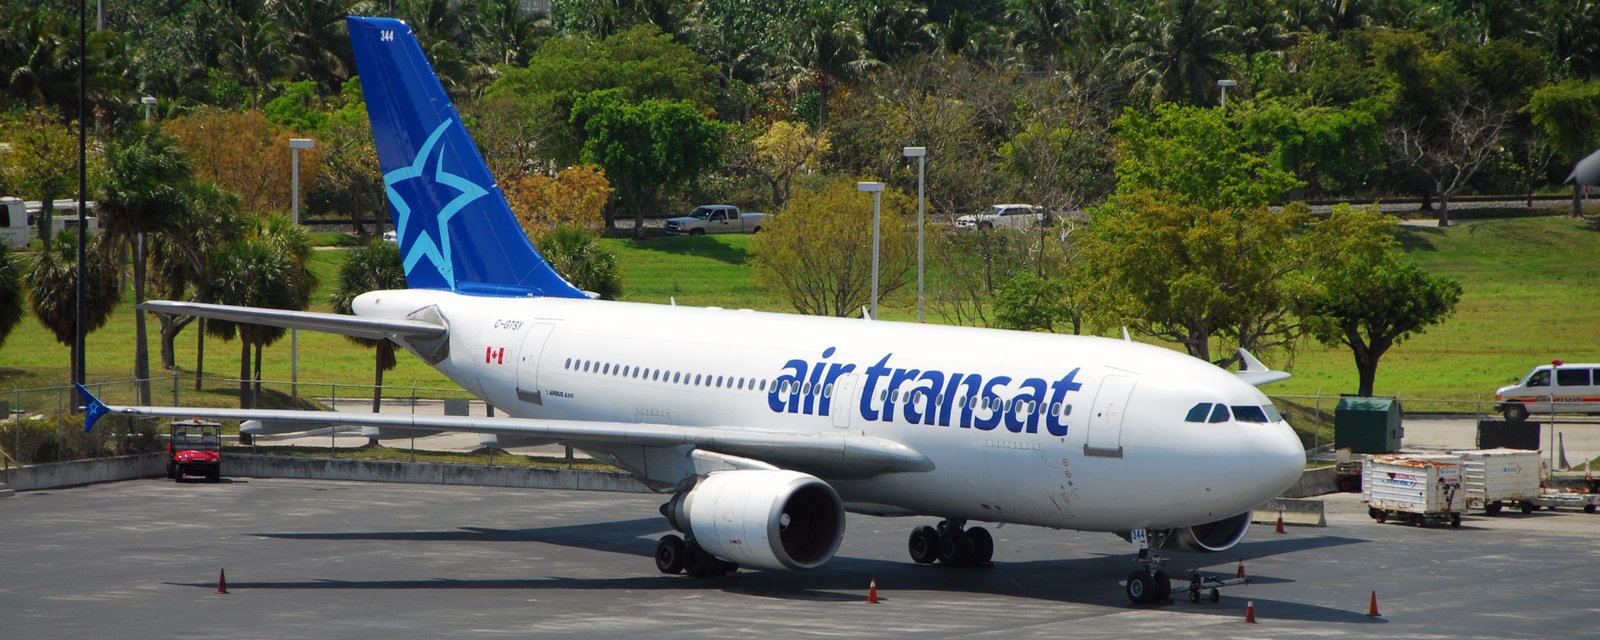 Air Transat affiche des vols à partir de 2$ en ce moment, mais ça ne fait pas l'affaire de tous.